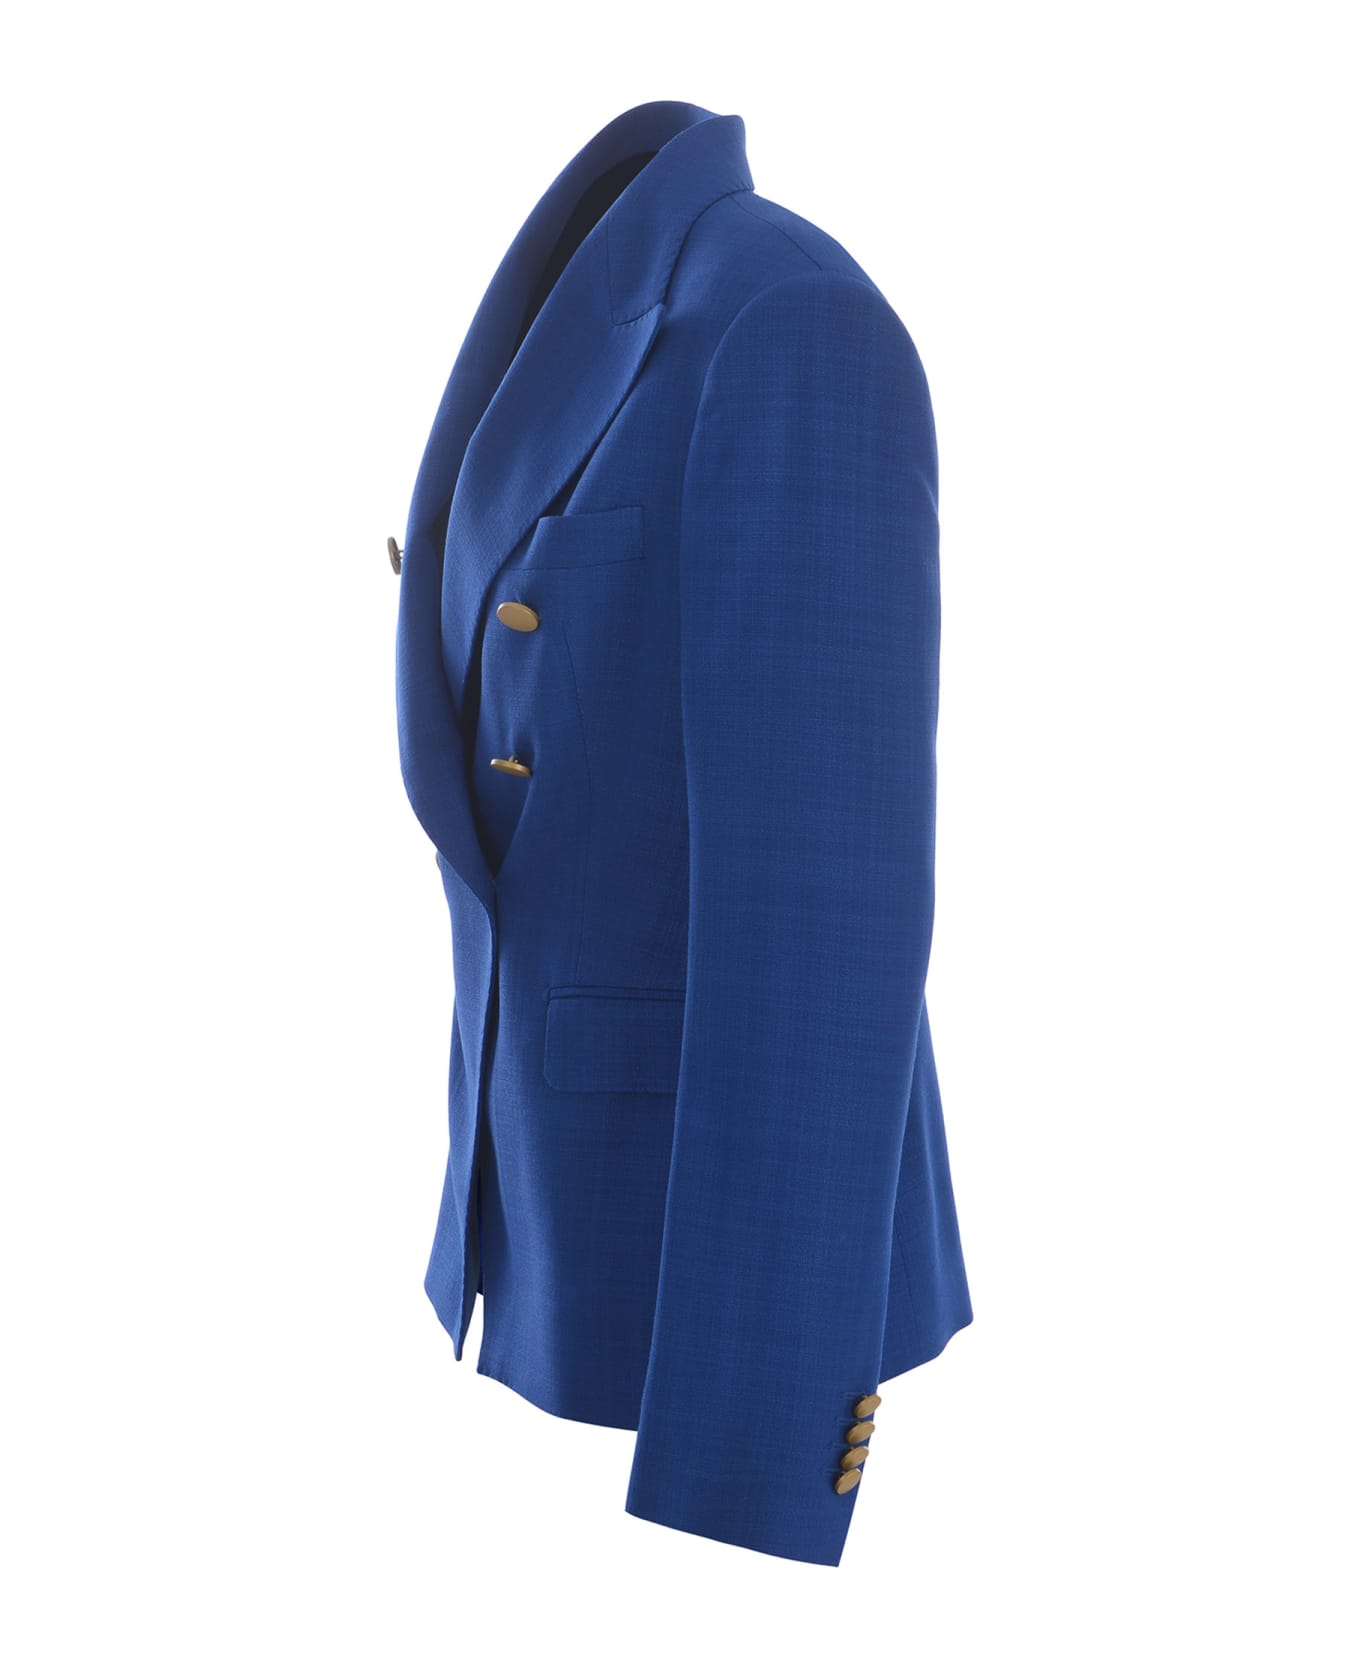 Tagliatore Double-breasted Jacket Tagliatore "j-alycia" Made Of Viscose - Bluette